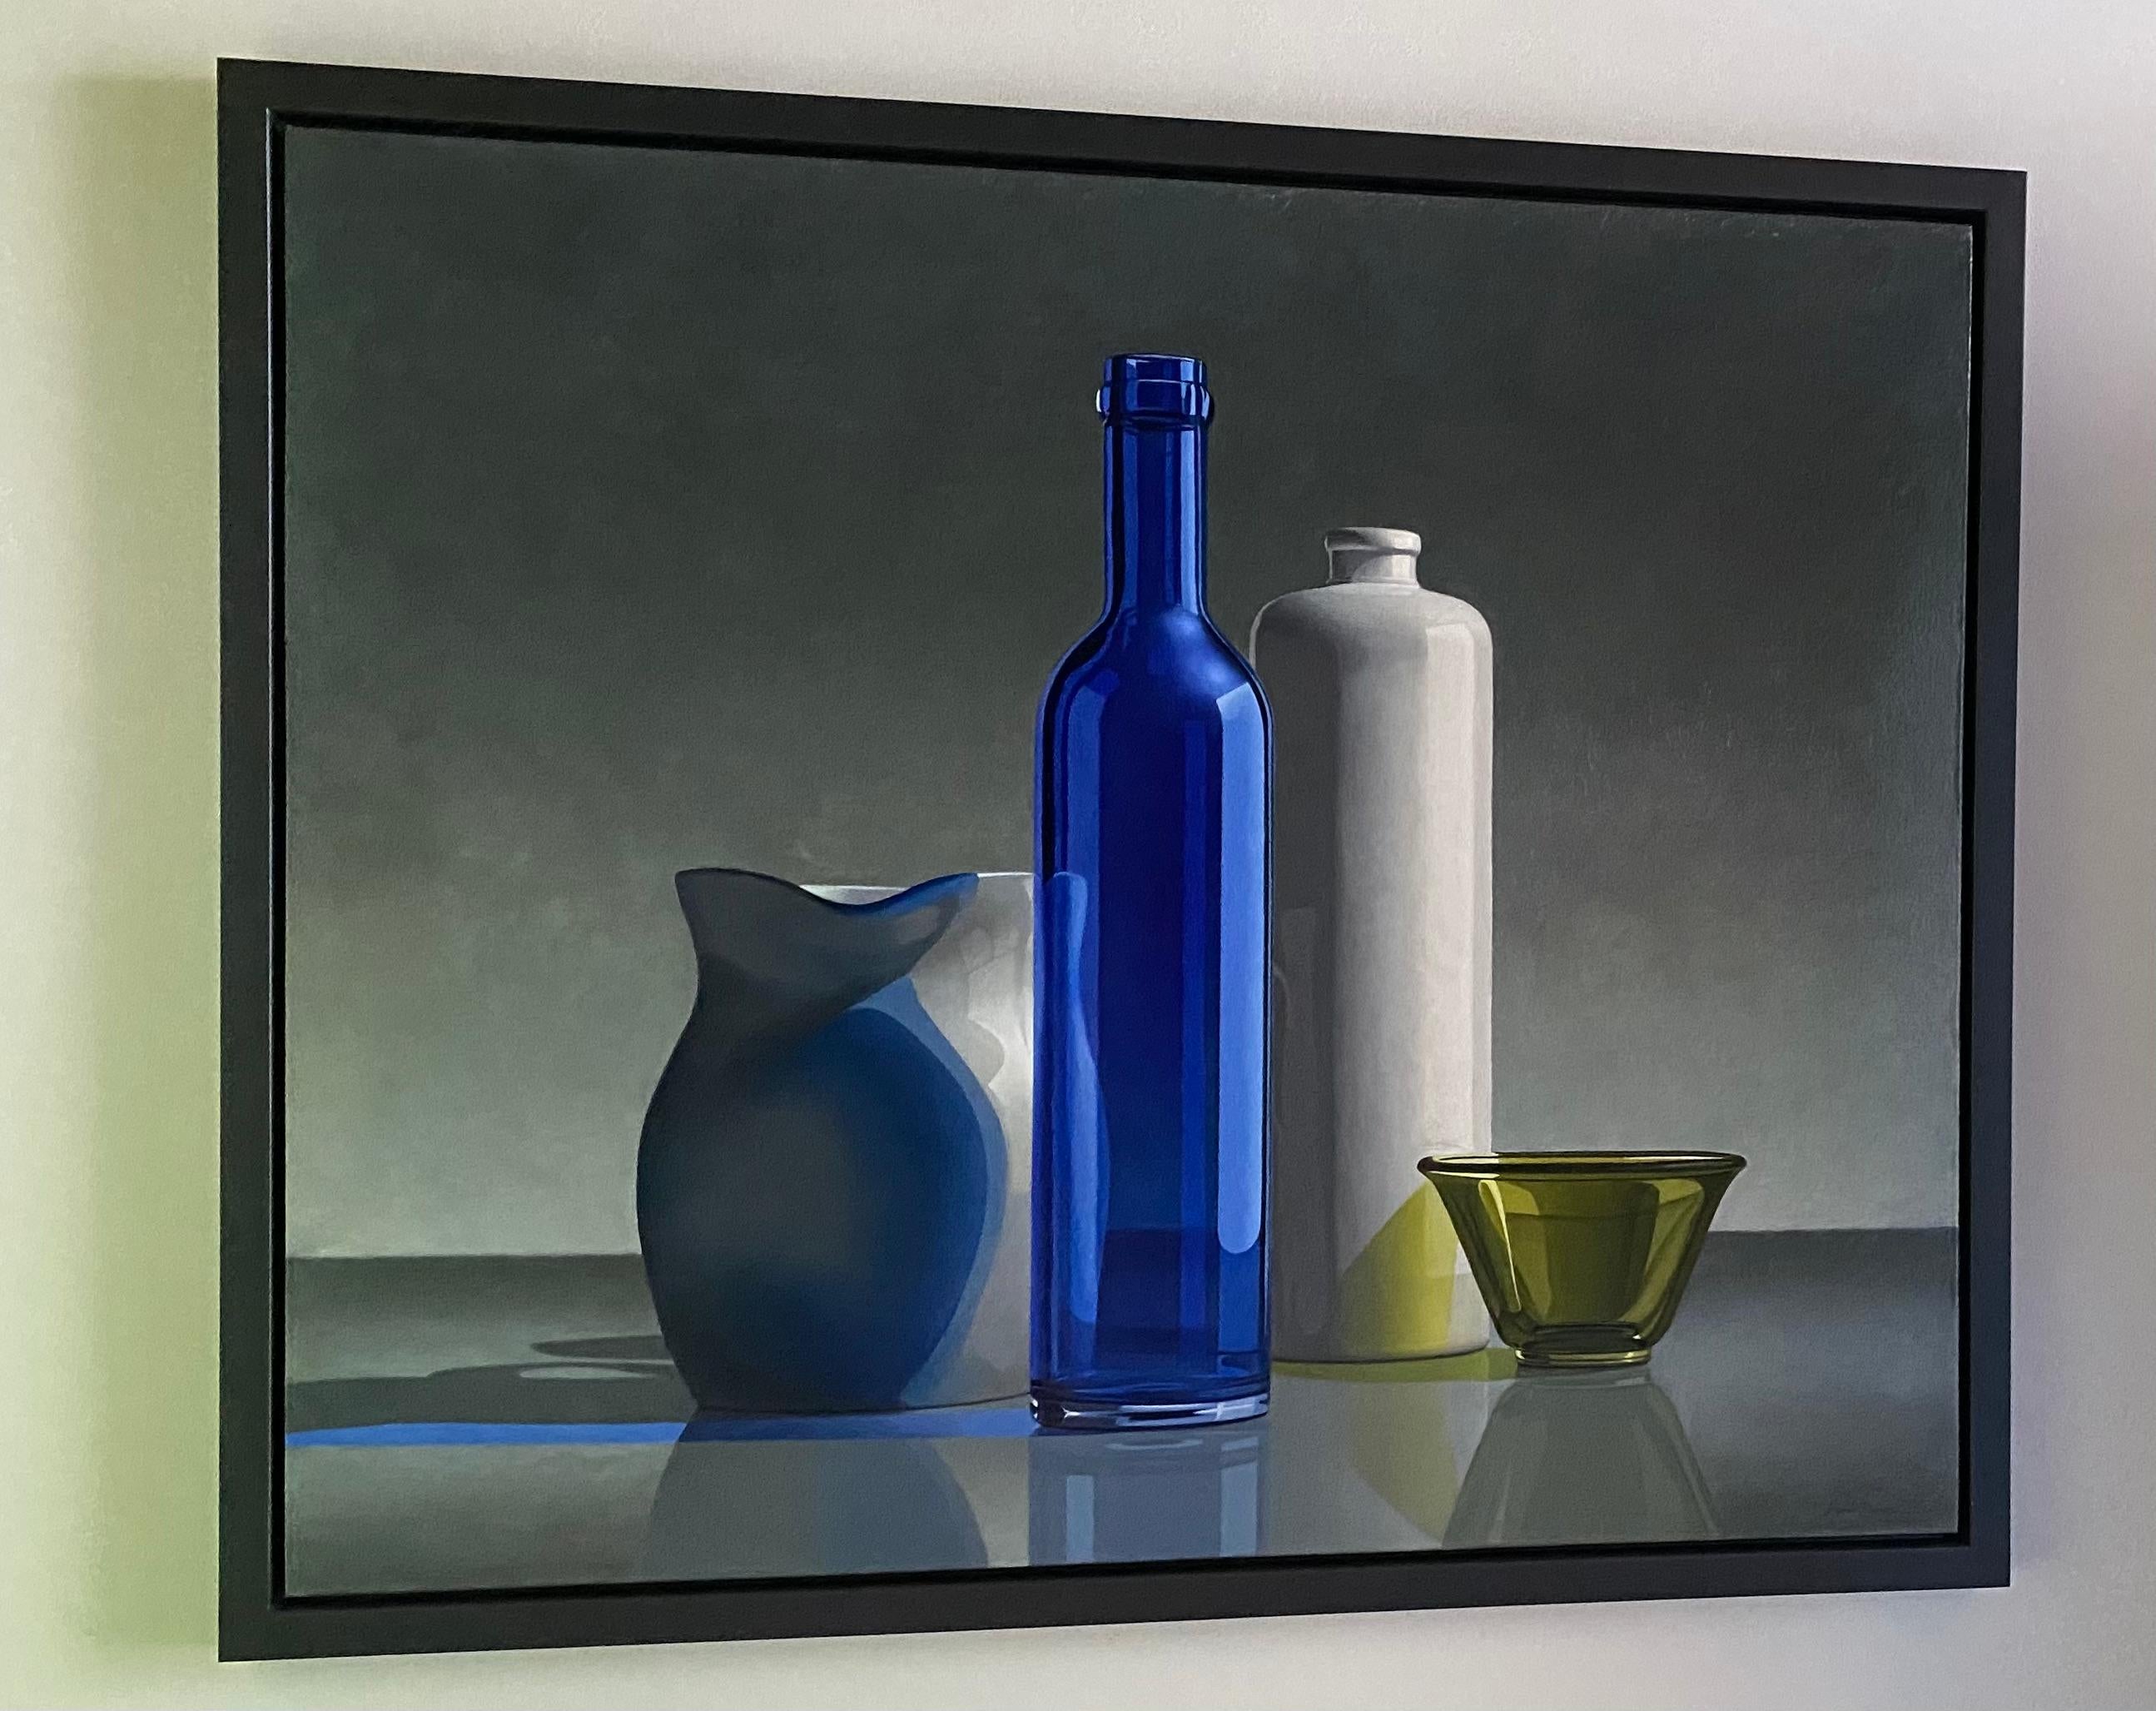 Henk Boon
Composition en bleu et  Vert
Huile sur toile sur bois
100 x 120 cm
Cadre inclus 107 x 127 cm

Les natures mortes du peintre néerlandais Henk Boon témoignent d'une abstraction de la réalité. Peint et composé avec tant de précision et de